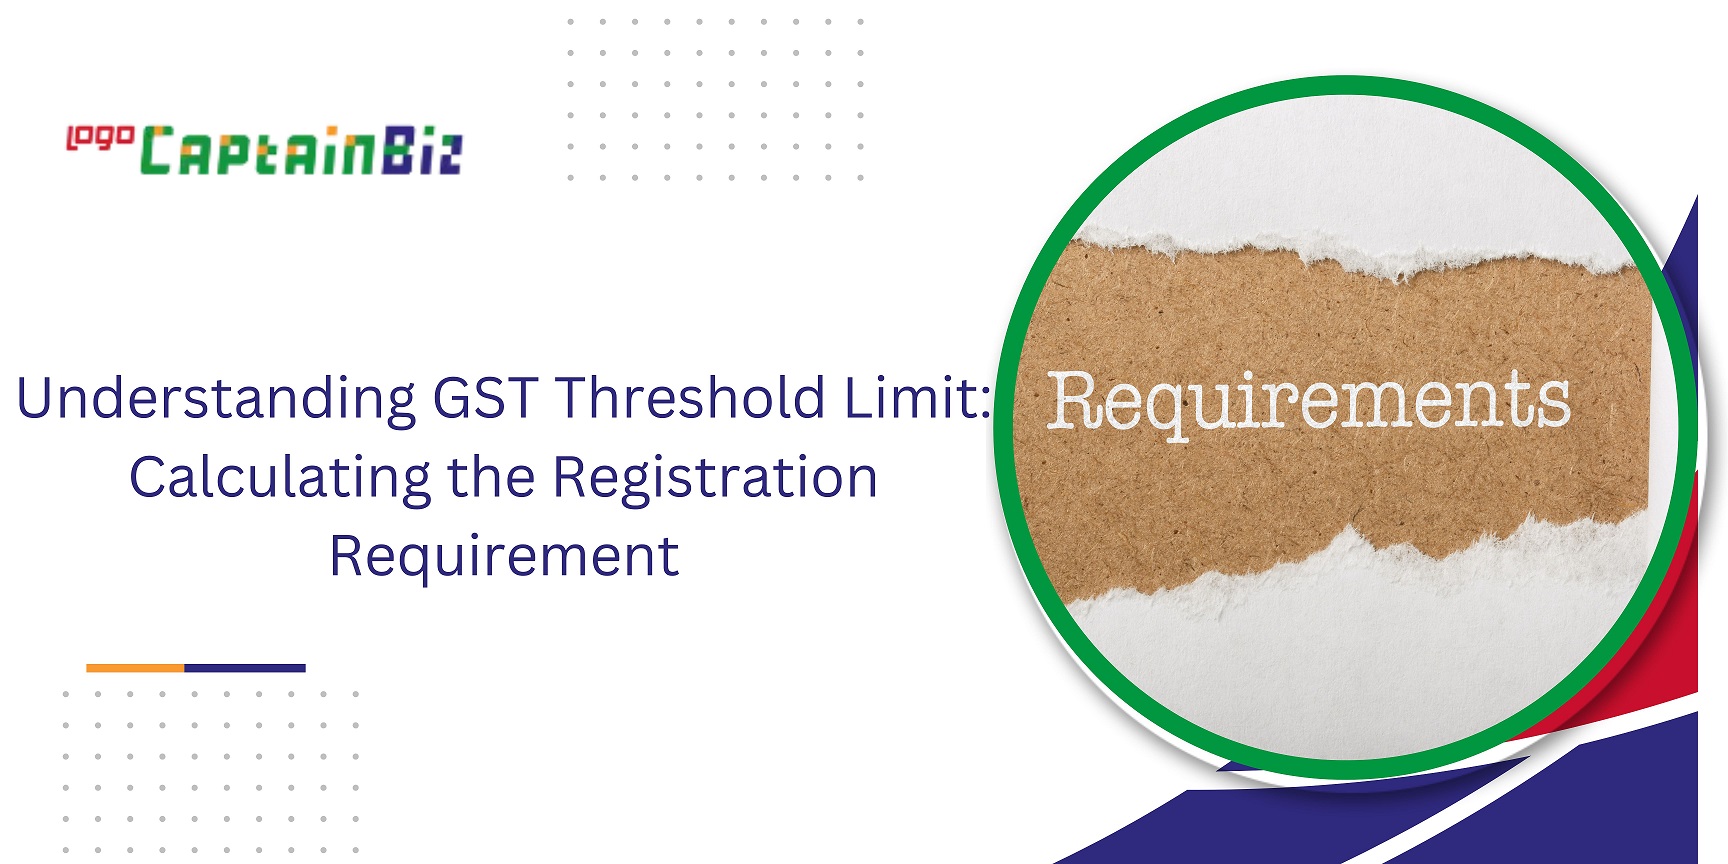 CaptainBiz: Understanding GST Threshold Limit Calculating the Registration Requirement